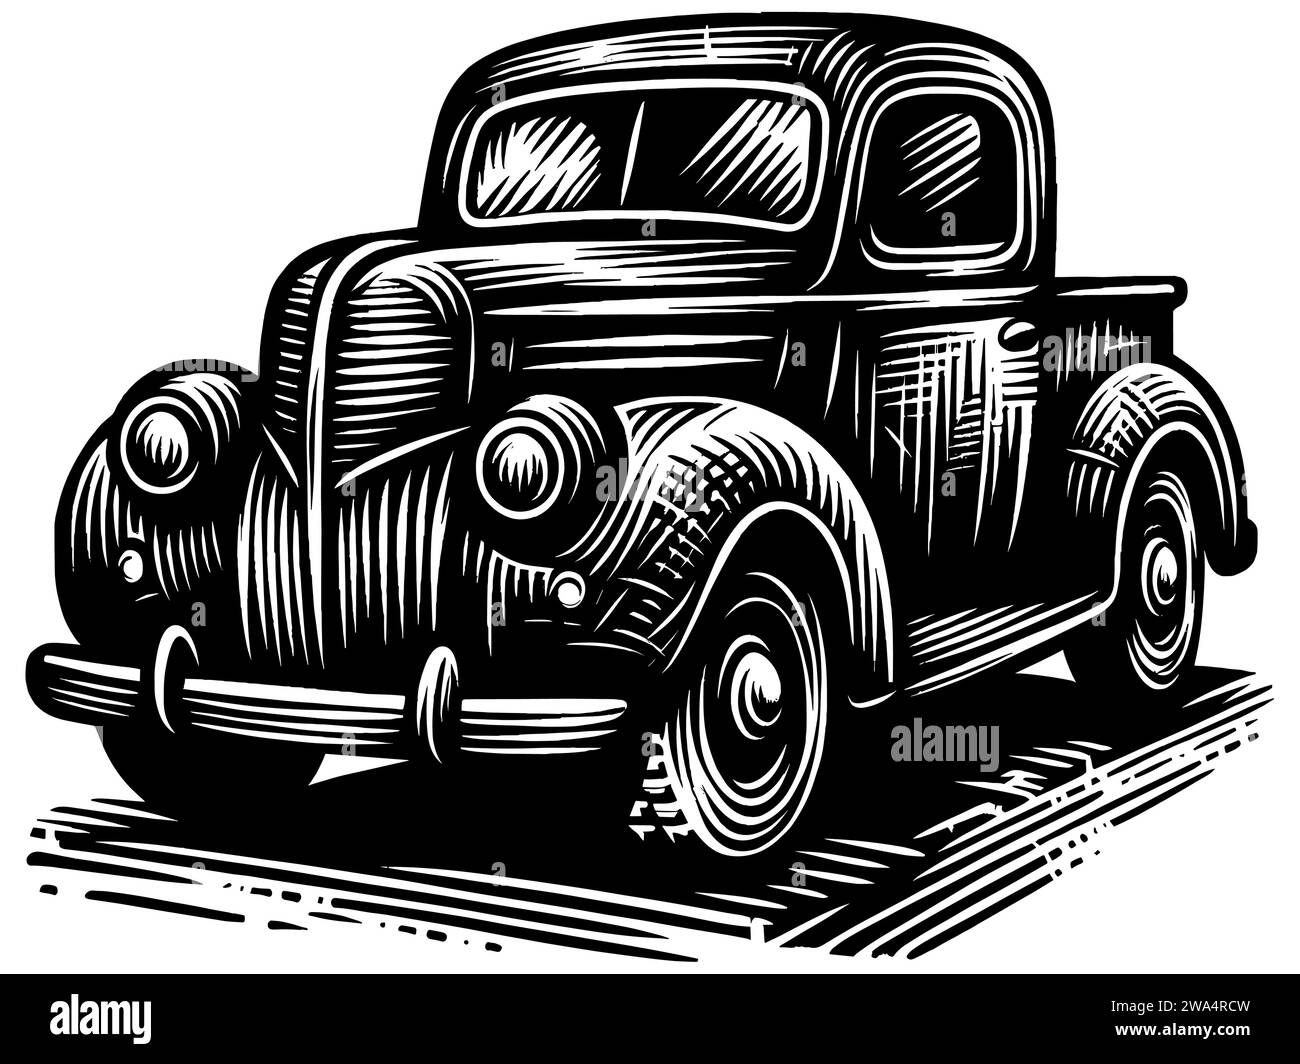 Ilustración de estilo woodcut de una camioneta vintage en blanco y negro. Ilustración del Vector